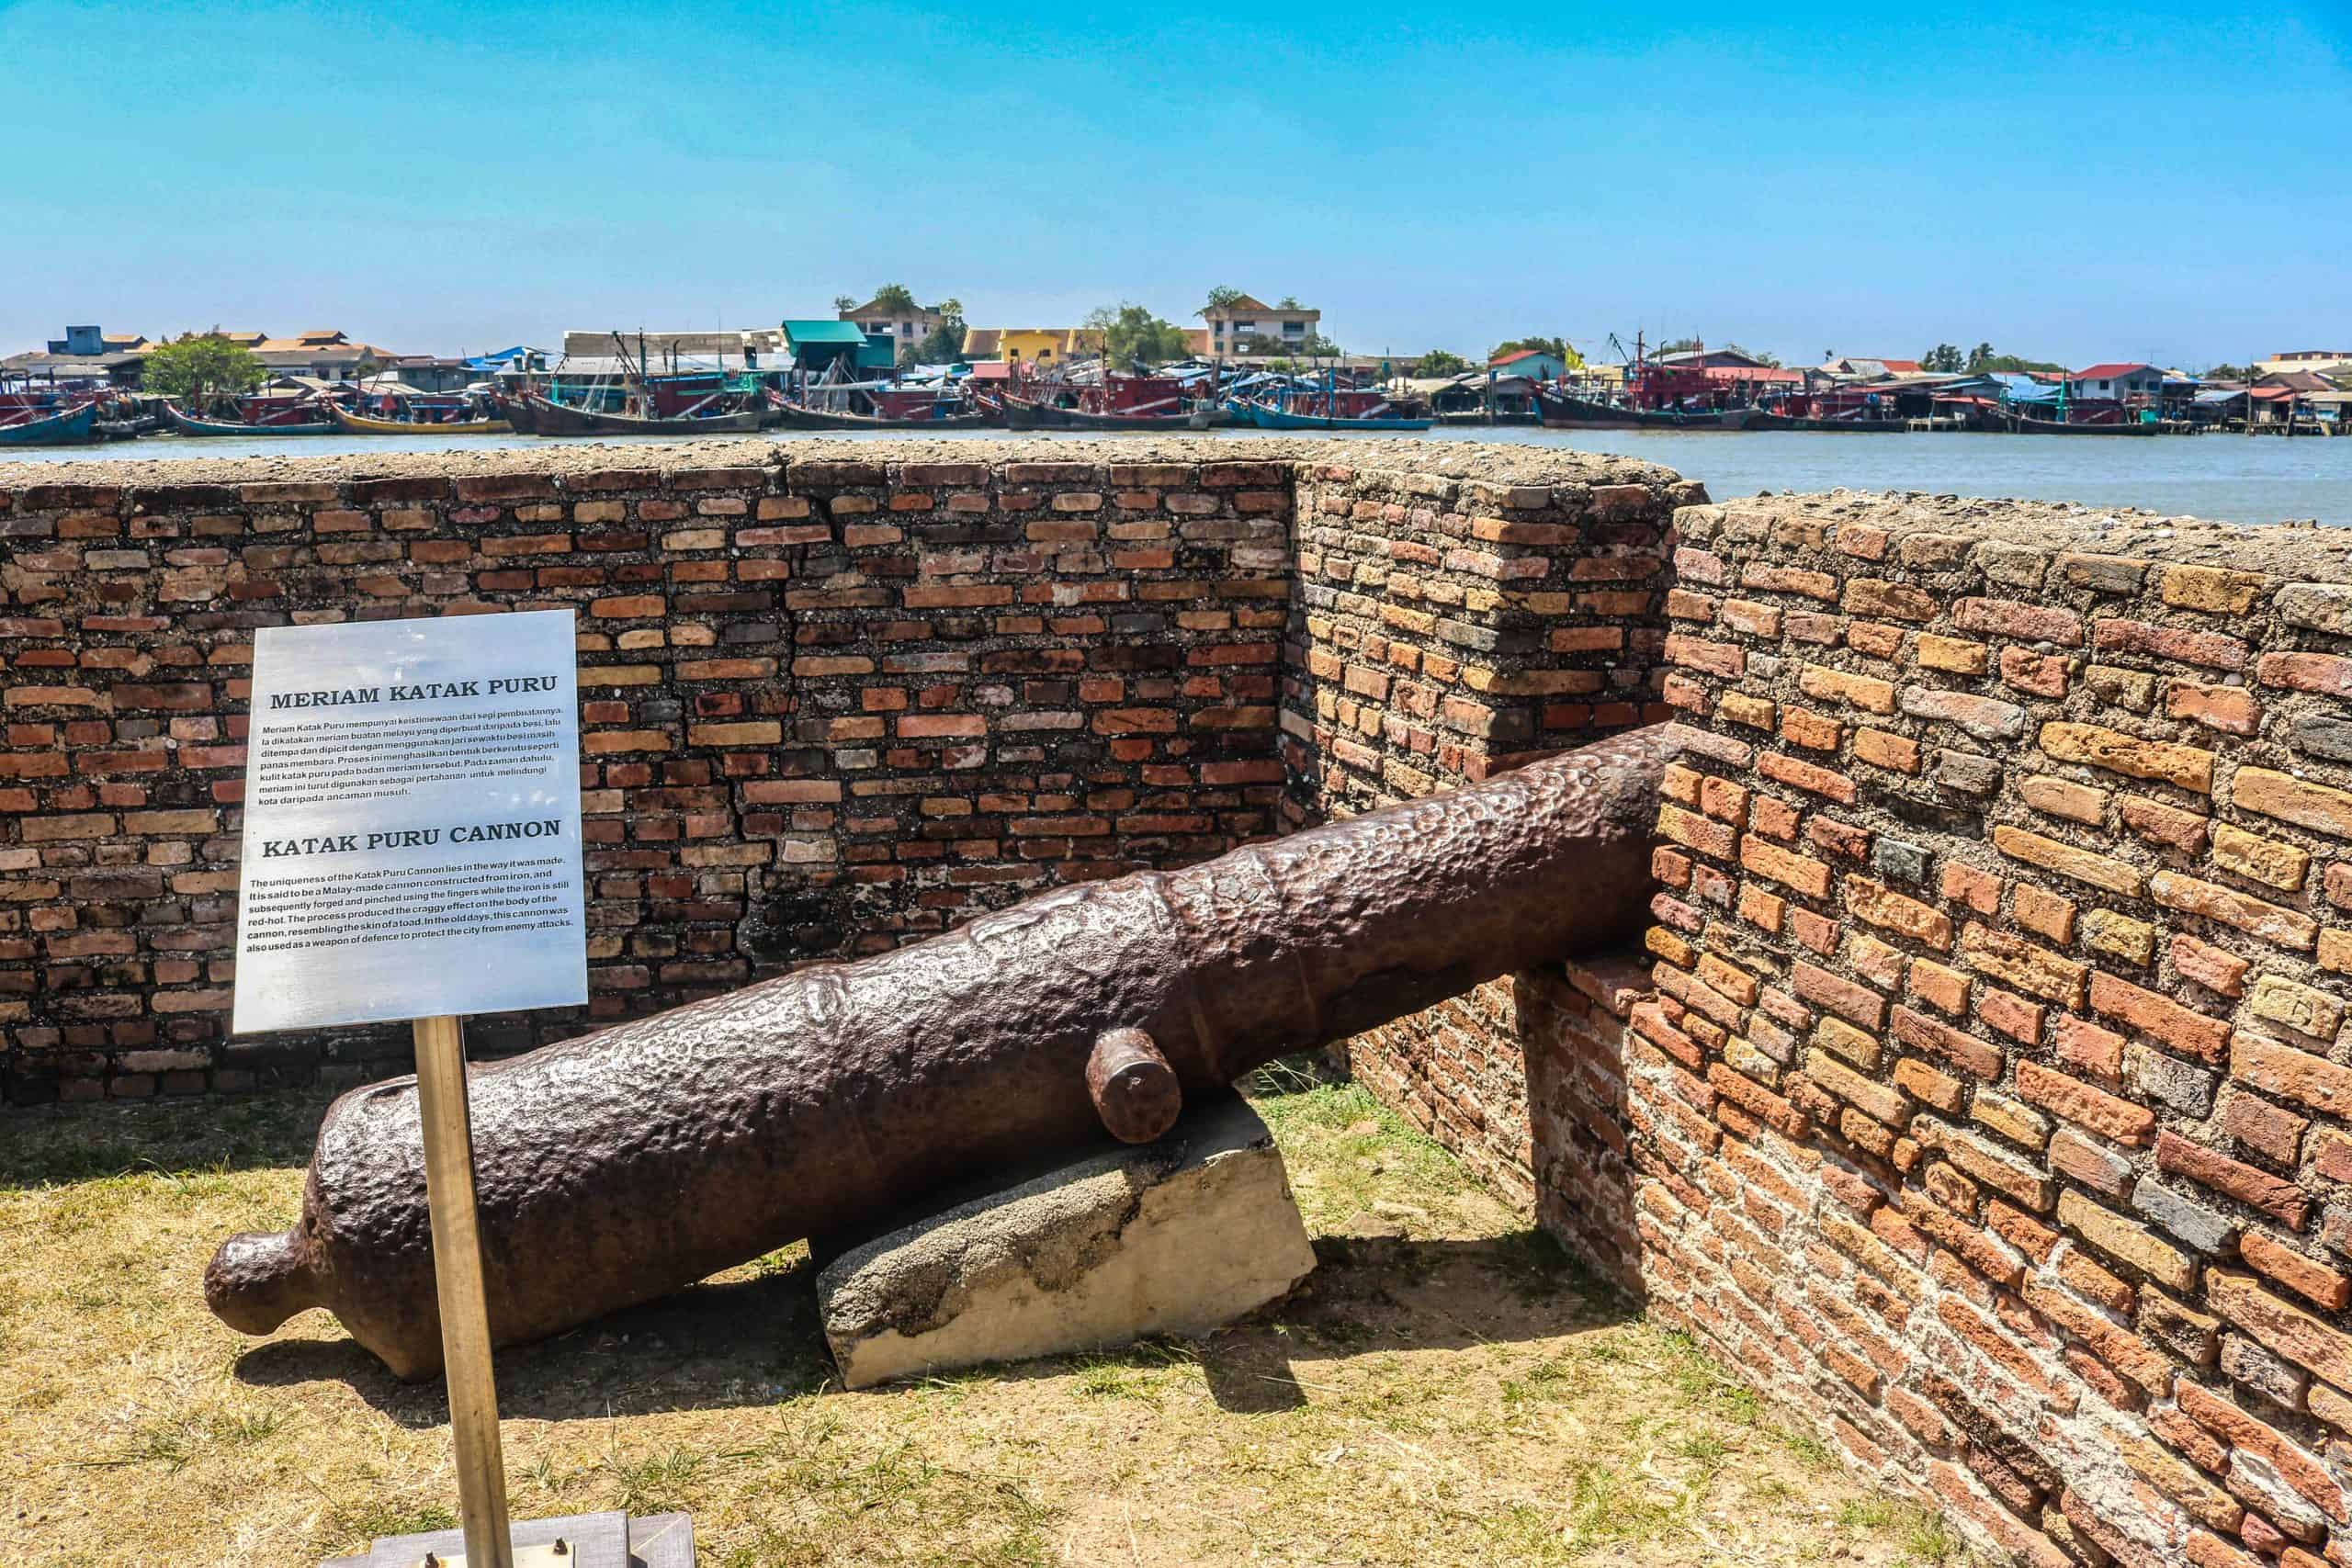 Kota Kuala Kedah Fort & Museum; Tale of a Fierce Little Fort